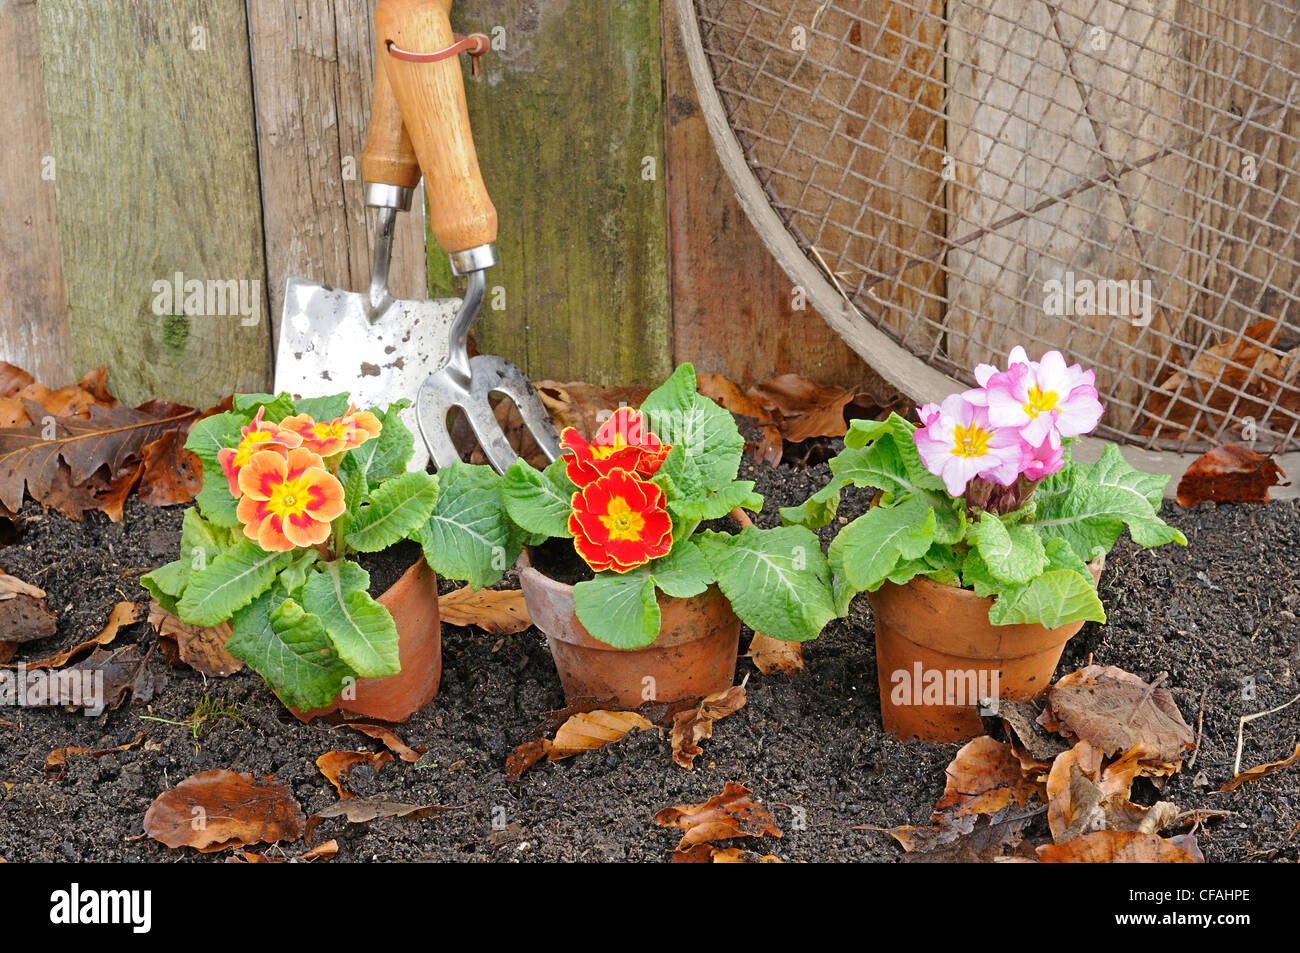 Rústico jardín primaveral escena con Prímulas, macetas de terracota y herramientas de jardinería. Foto de stock